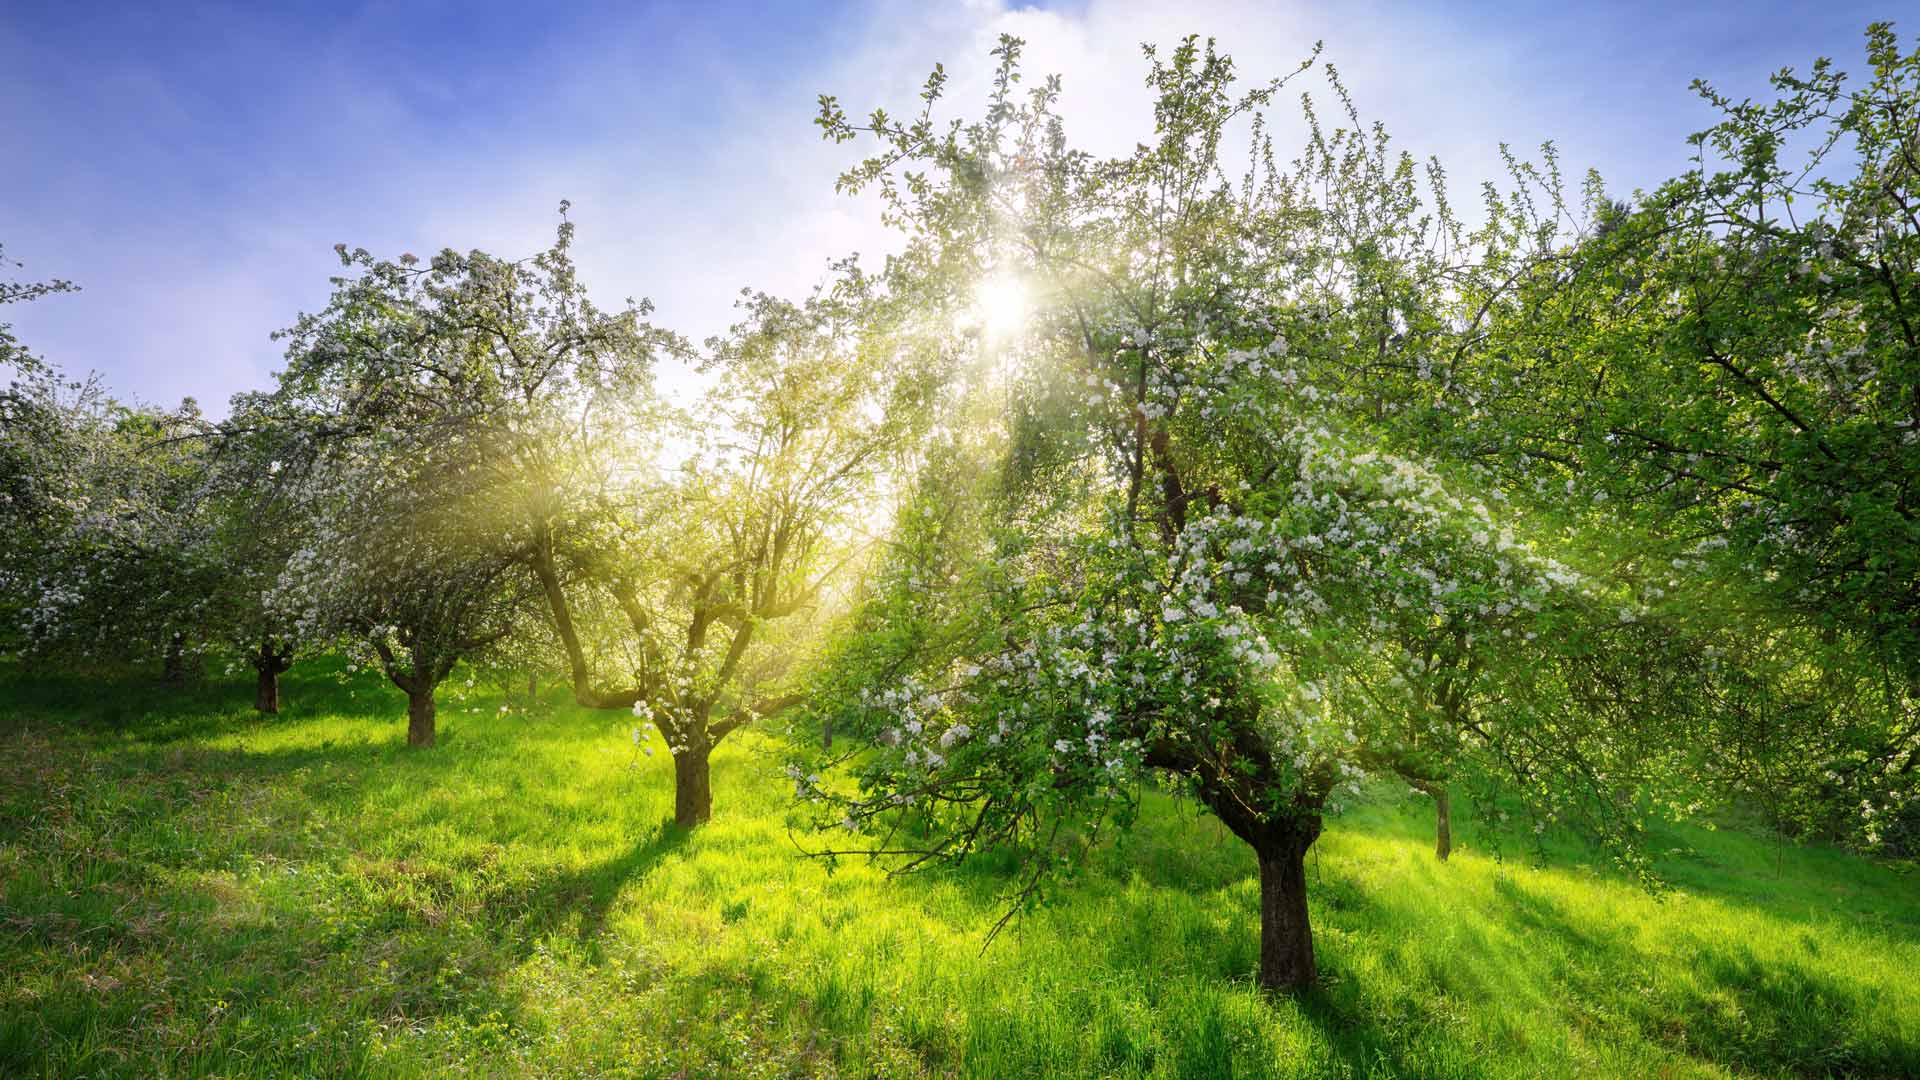 Bing image: Apple trees in spring, Germany - Bing Wallpaper Gallery